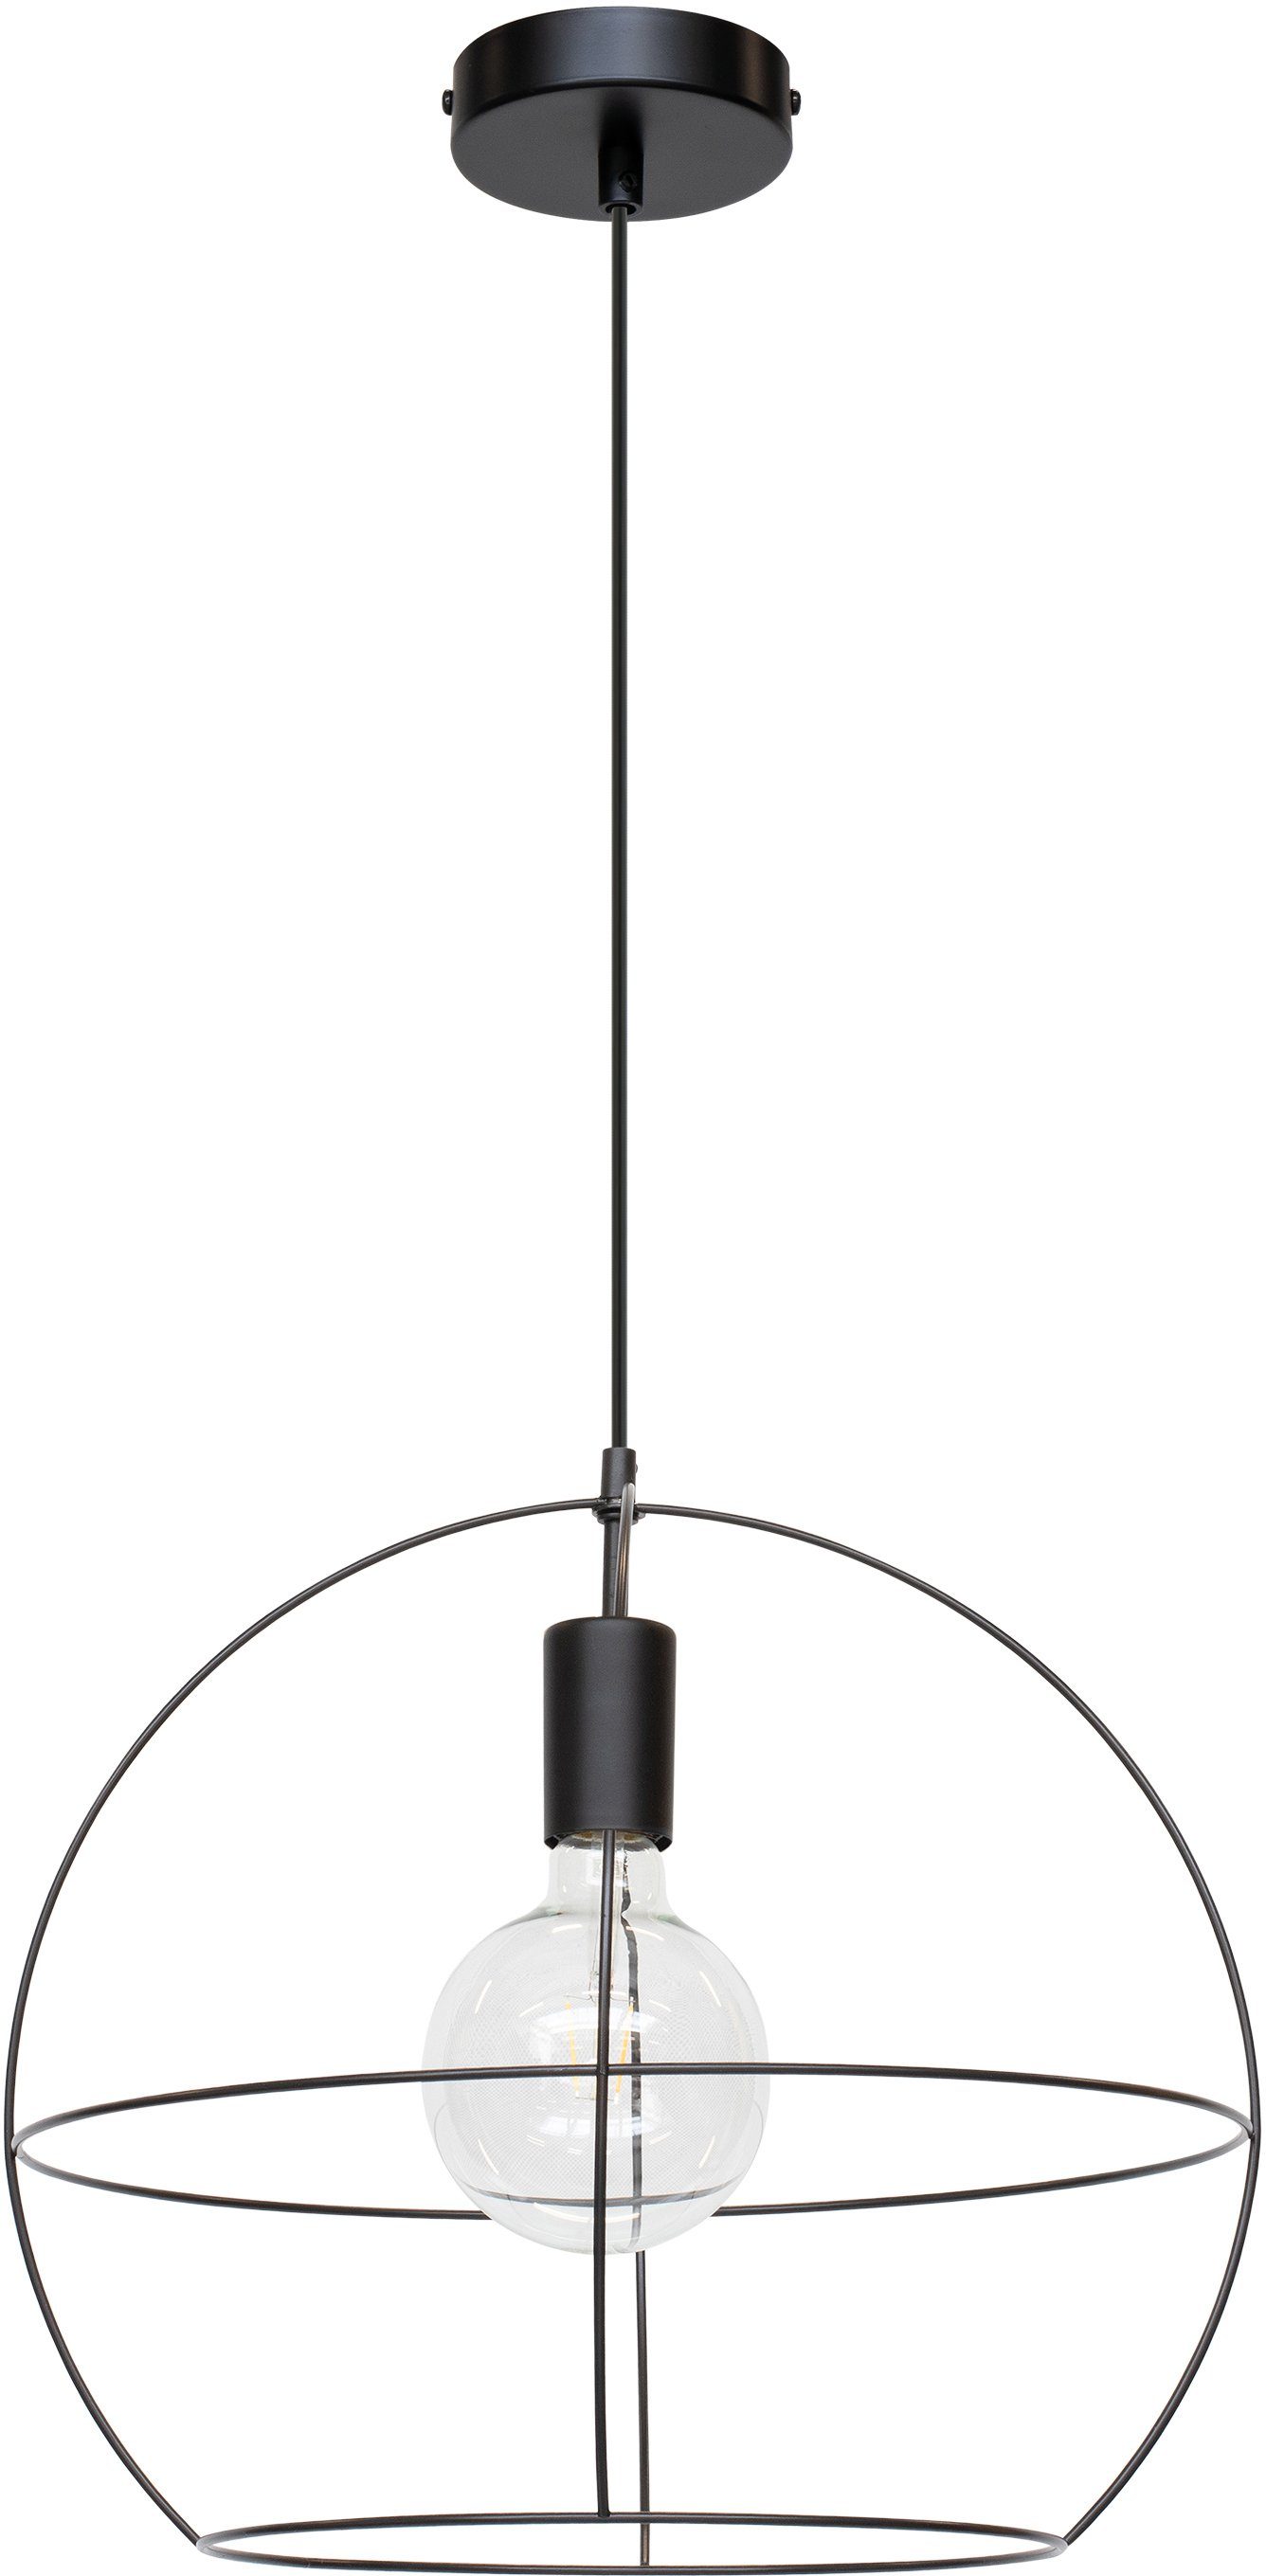 BRITOP LIGHTING Hanglamp Casa Palla Decoratieve lamp van metaal, bijpassende LM E27 / exclusief, Made in Europe (1 stuk)